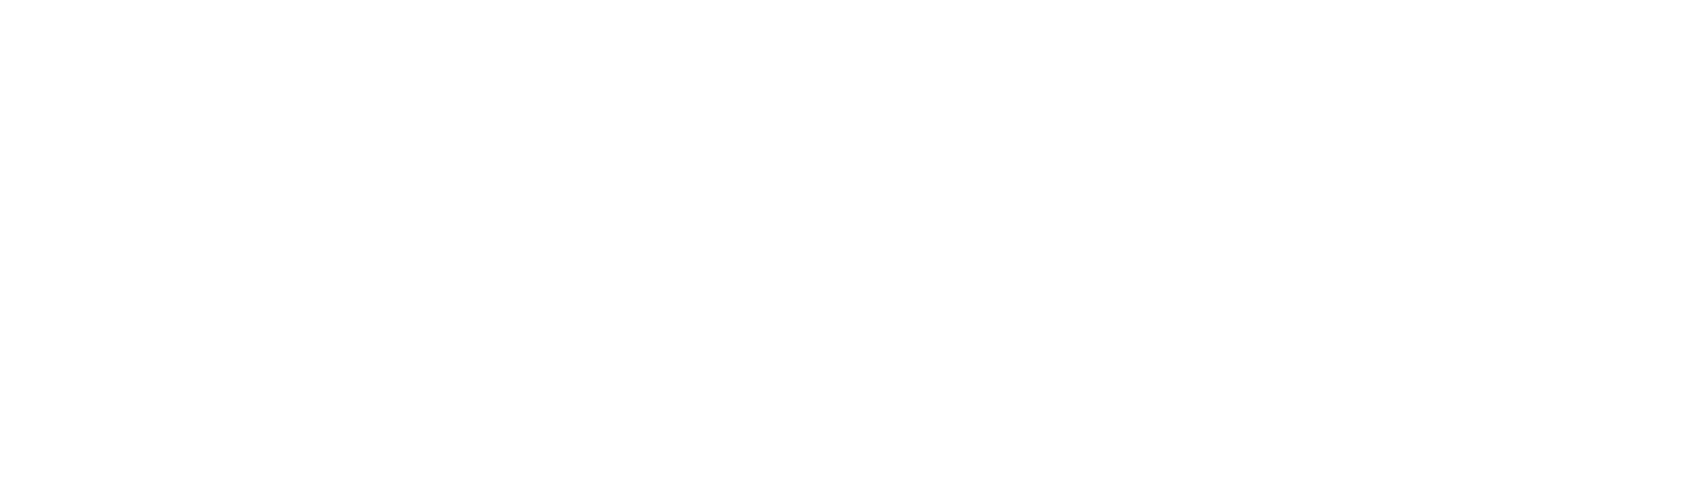 App Sooypro apple store